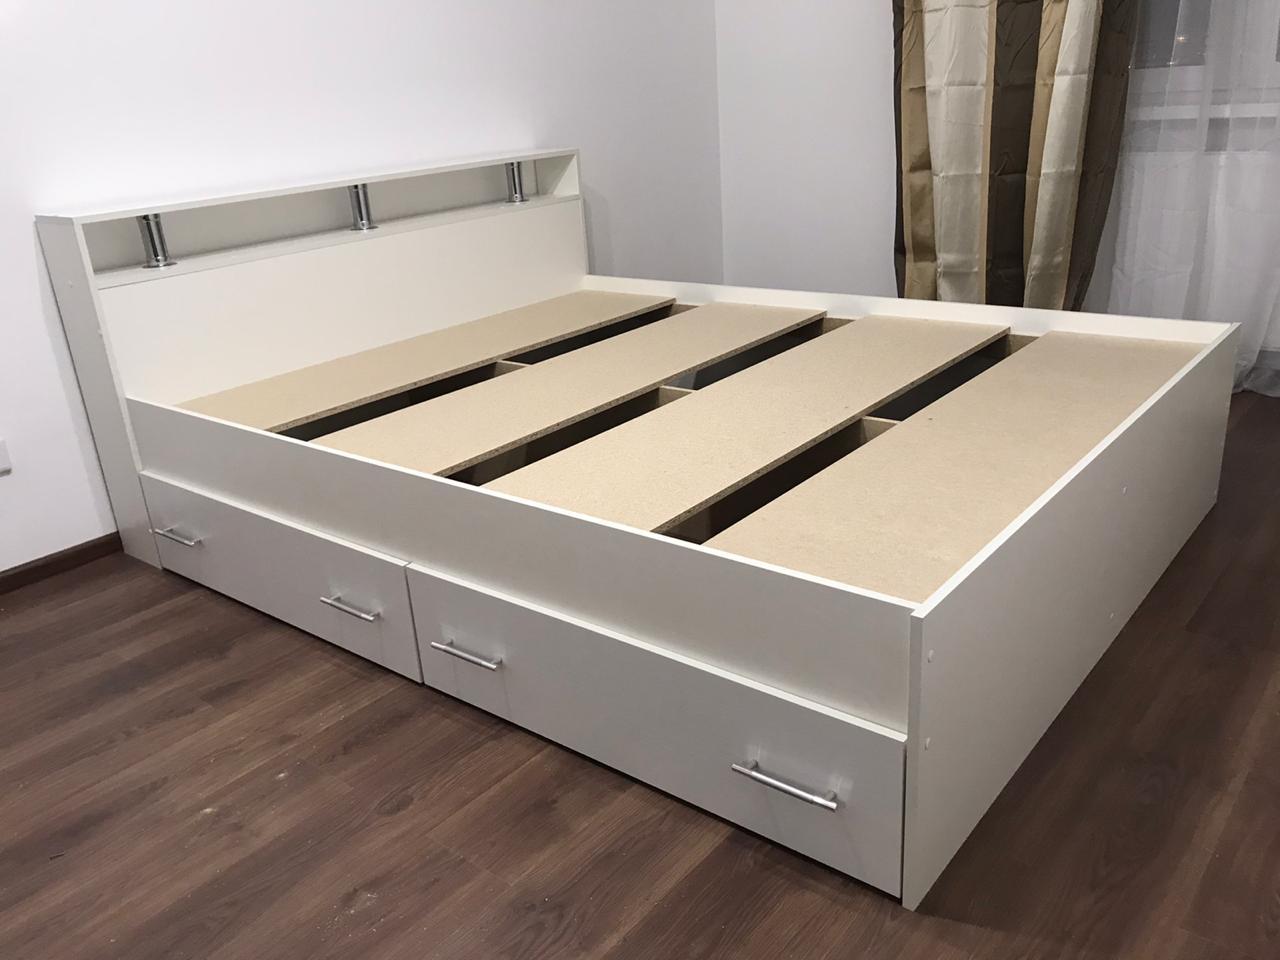 кровать размером 160 на 180